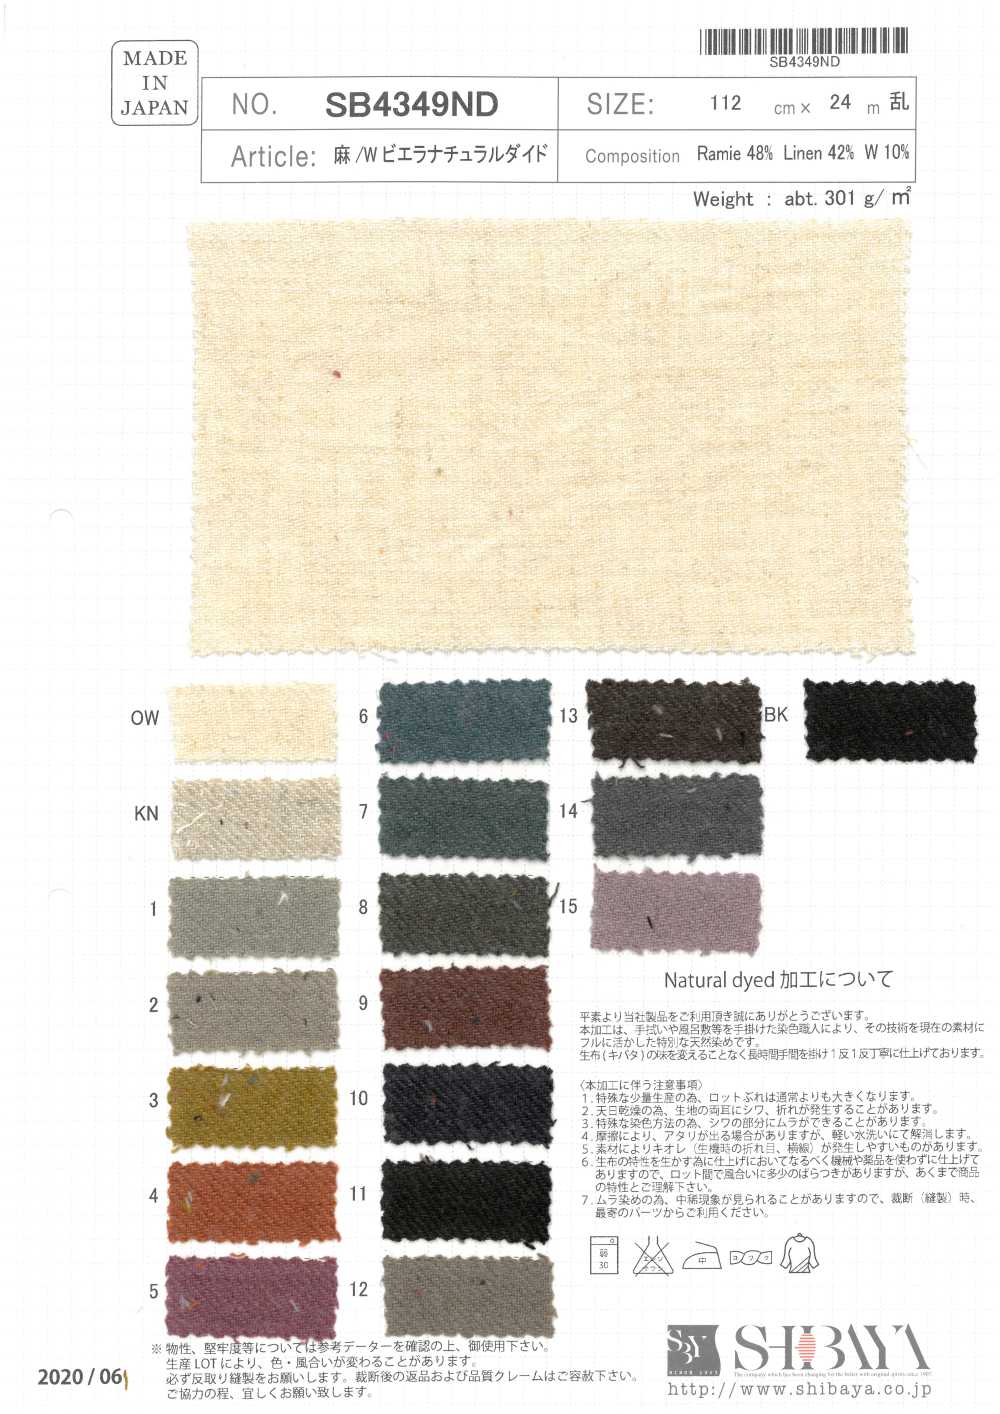 SB4349ND Lino/ Viyella Teñido Natural[Fabrica Textil] SHIBAYA